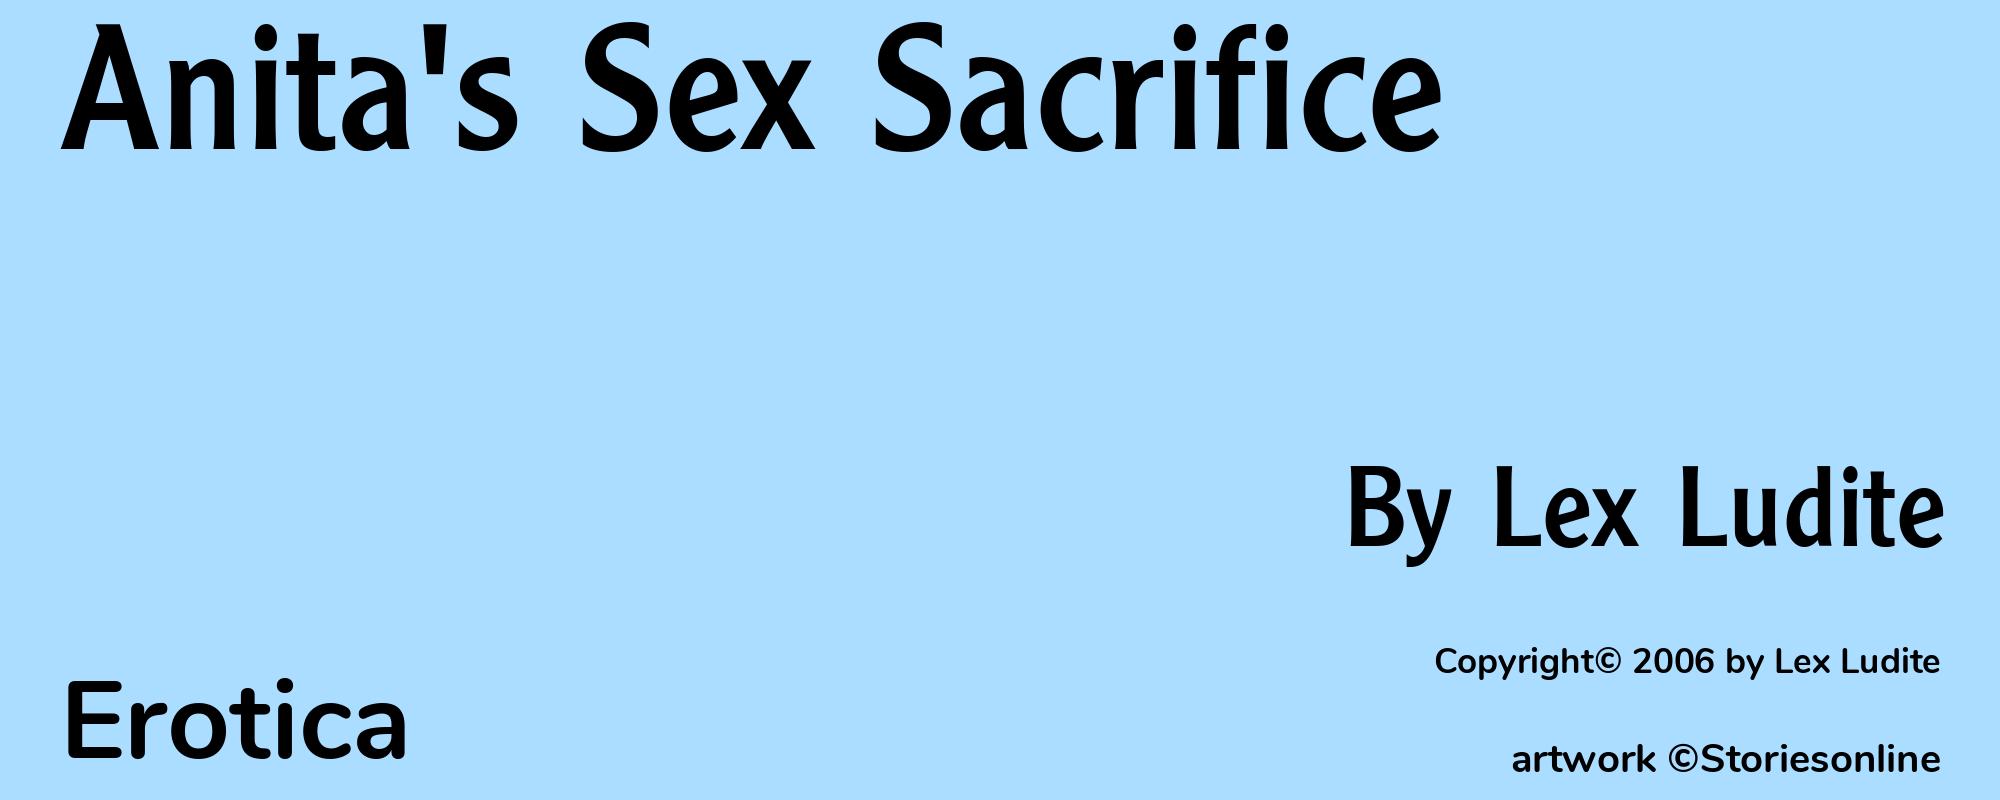 Anita's Sex Sacrifice - Cover